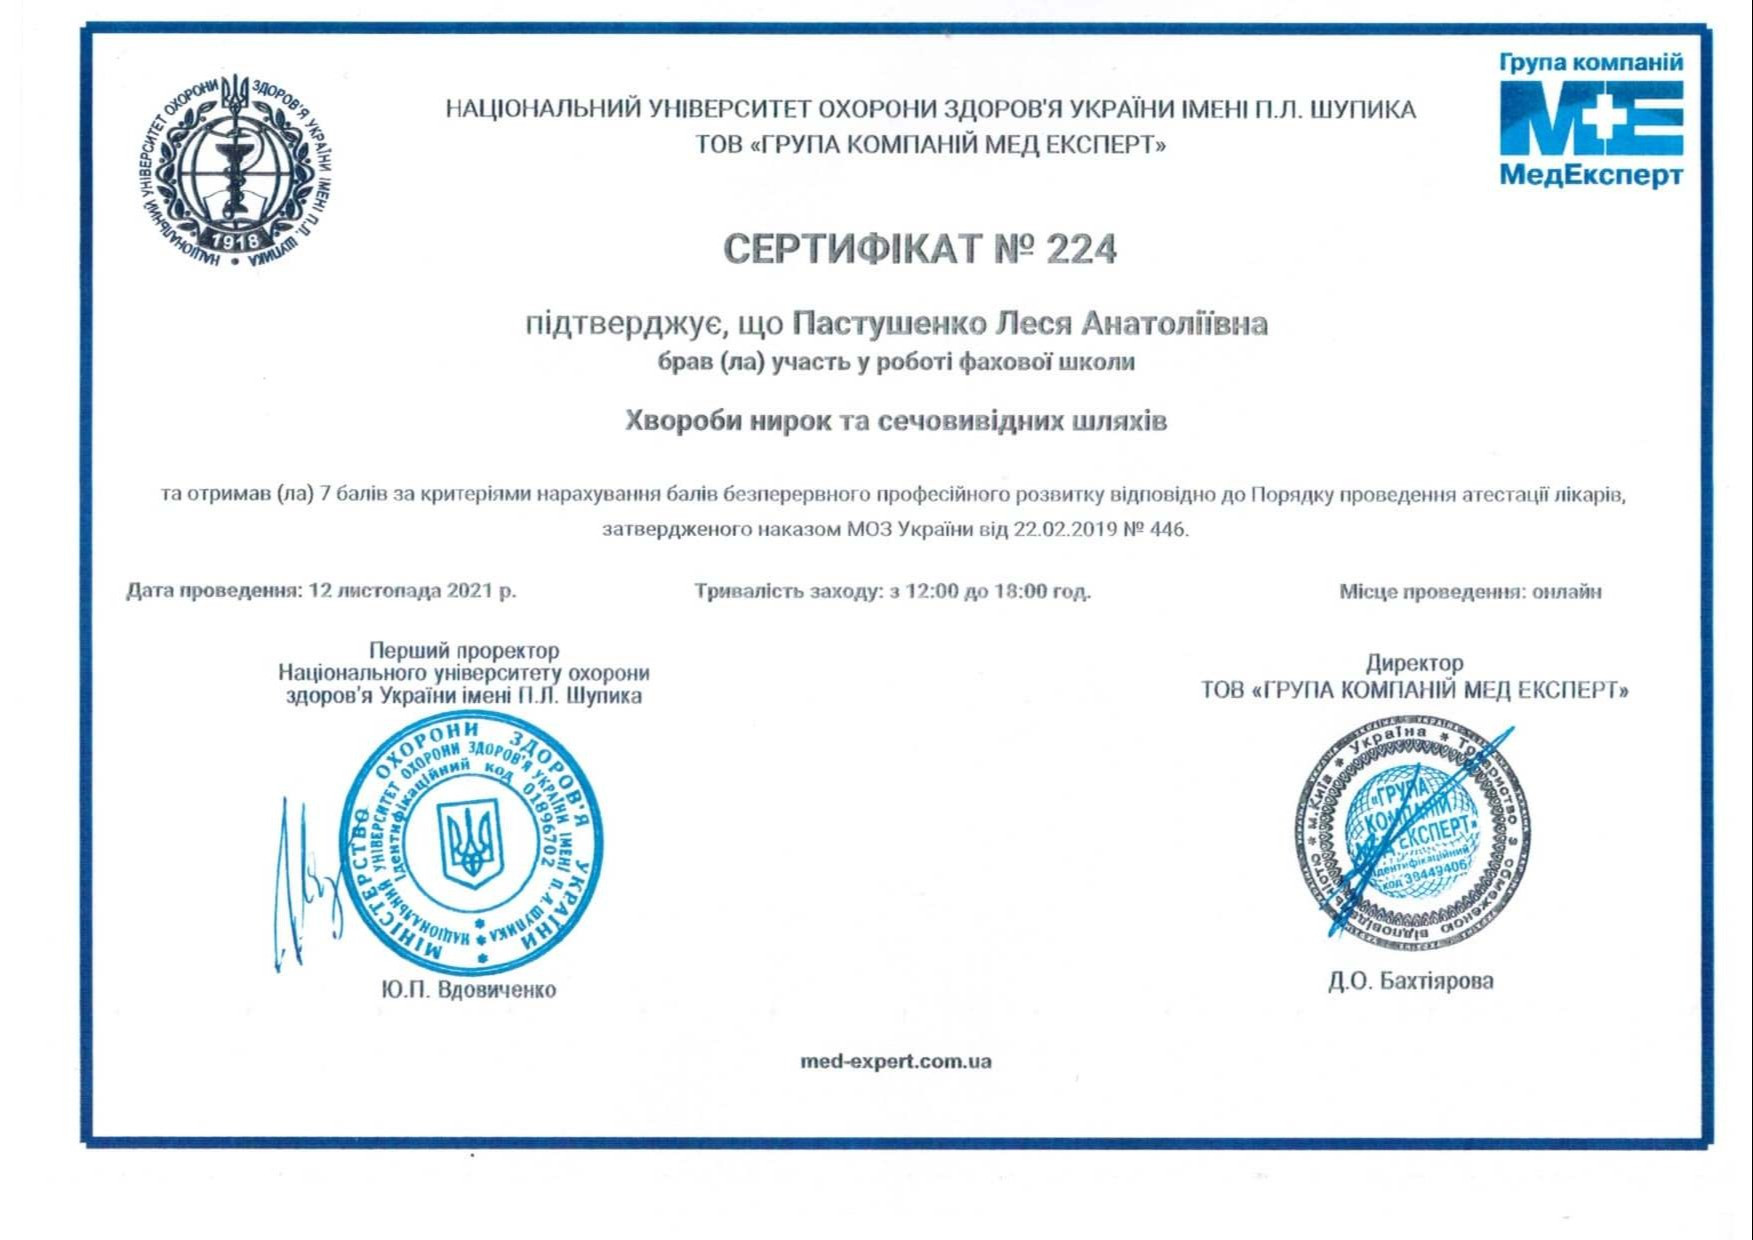 Сертификат об участии в работе профессиональной школы